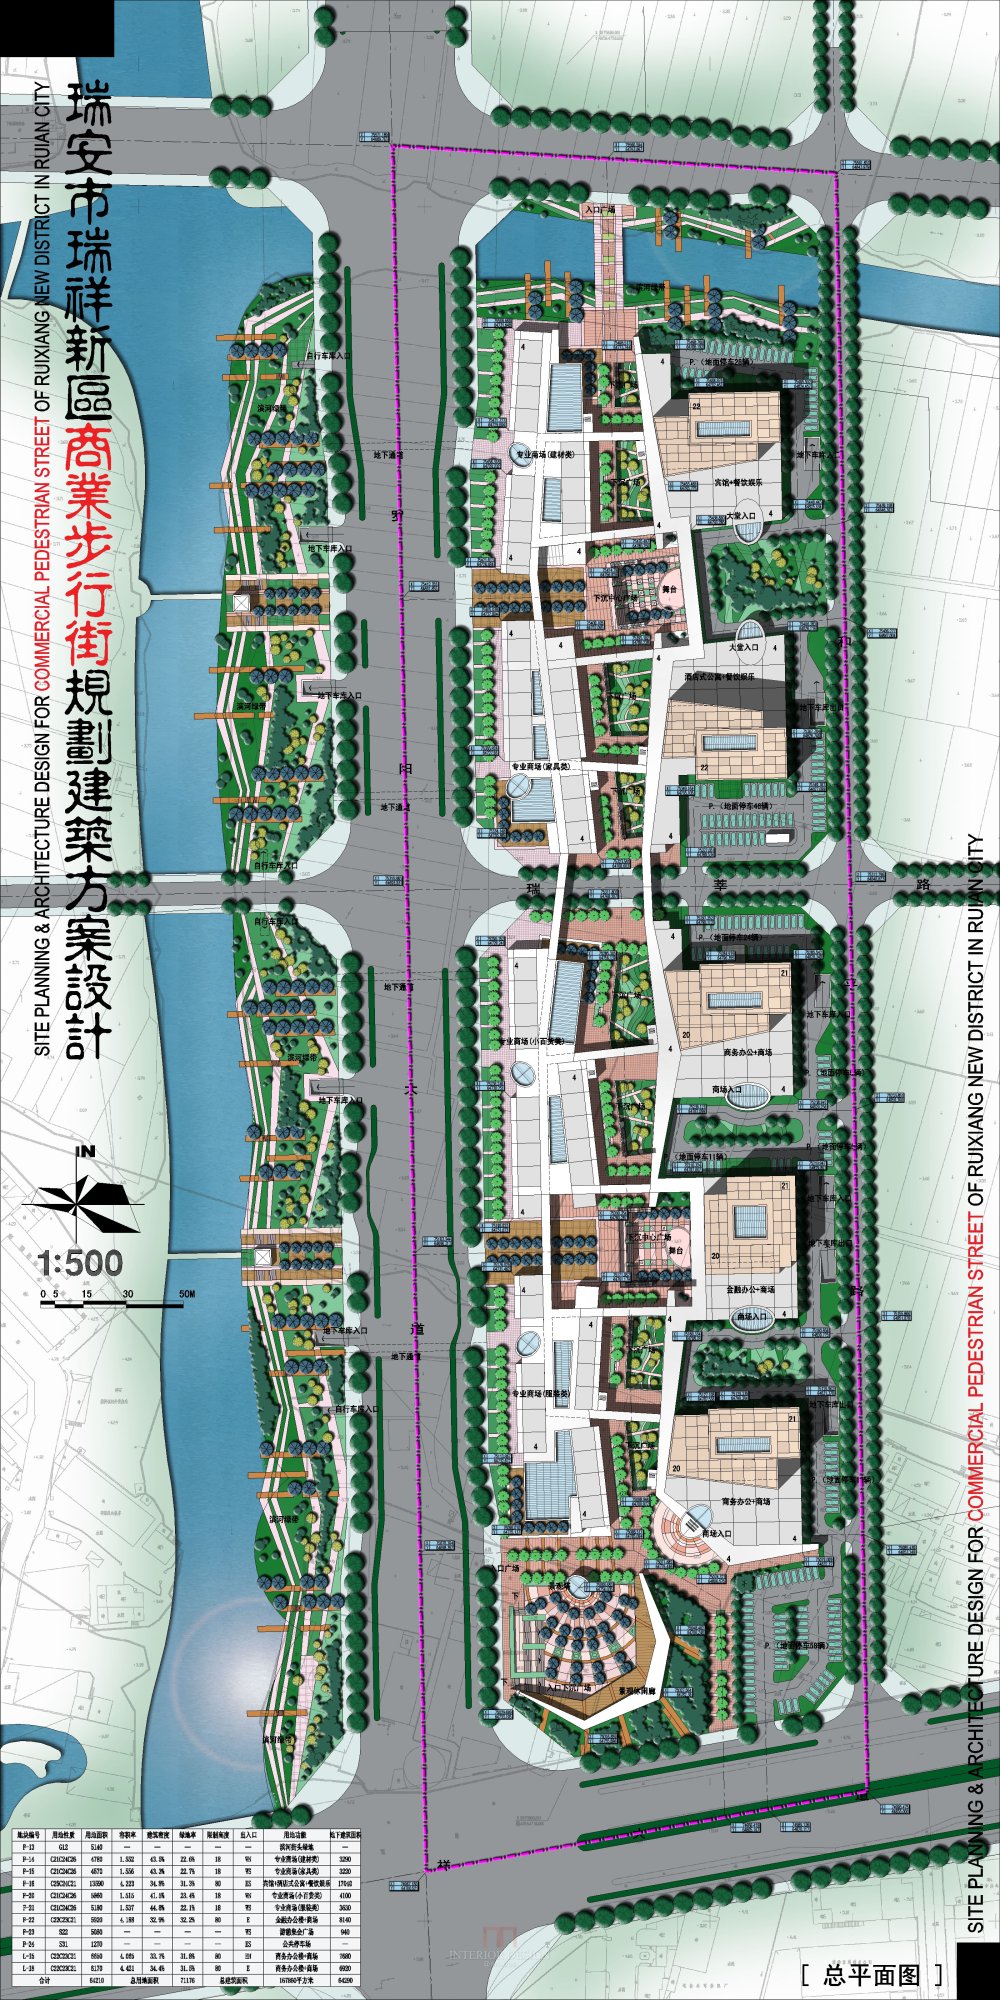 浙江瑞安新区商业步行街规划建筑设计方案_2-02瑞安商业街-总平面.jpg